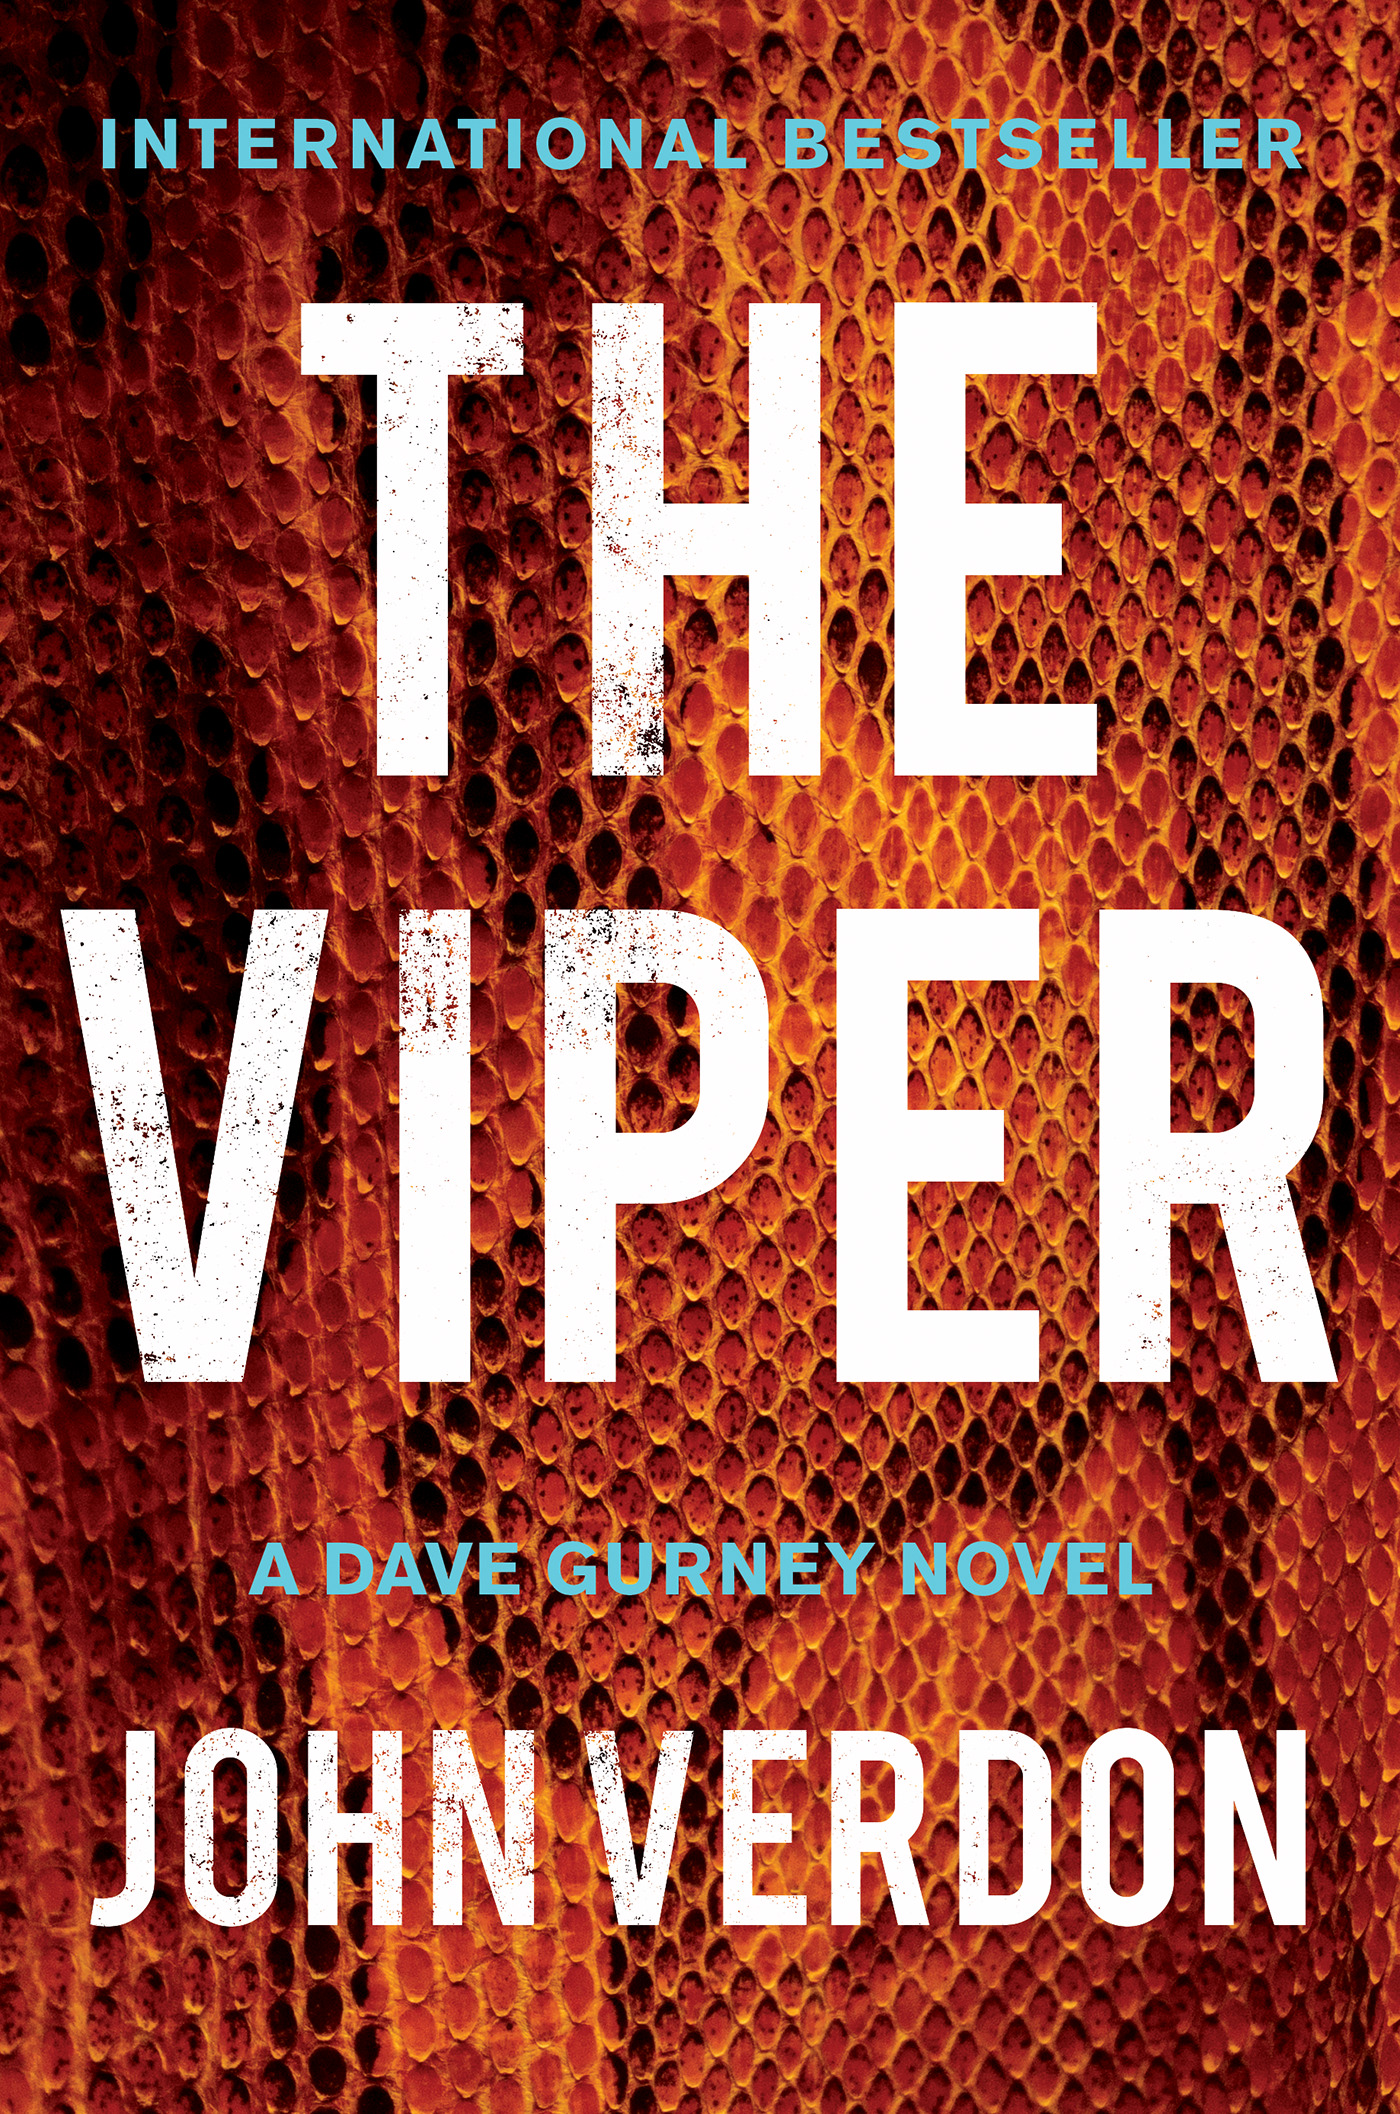 The Viper